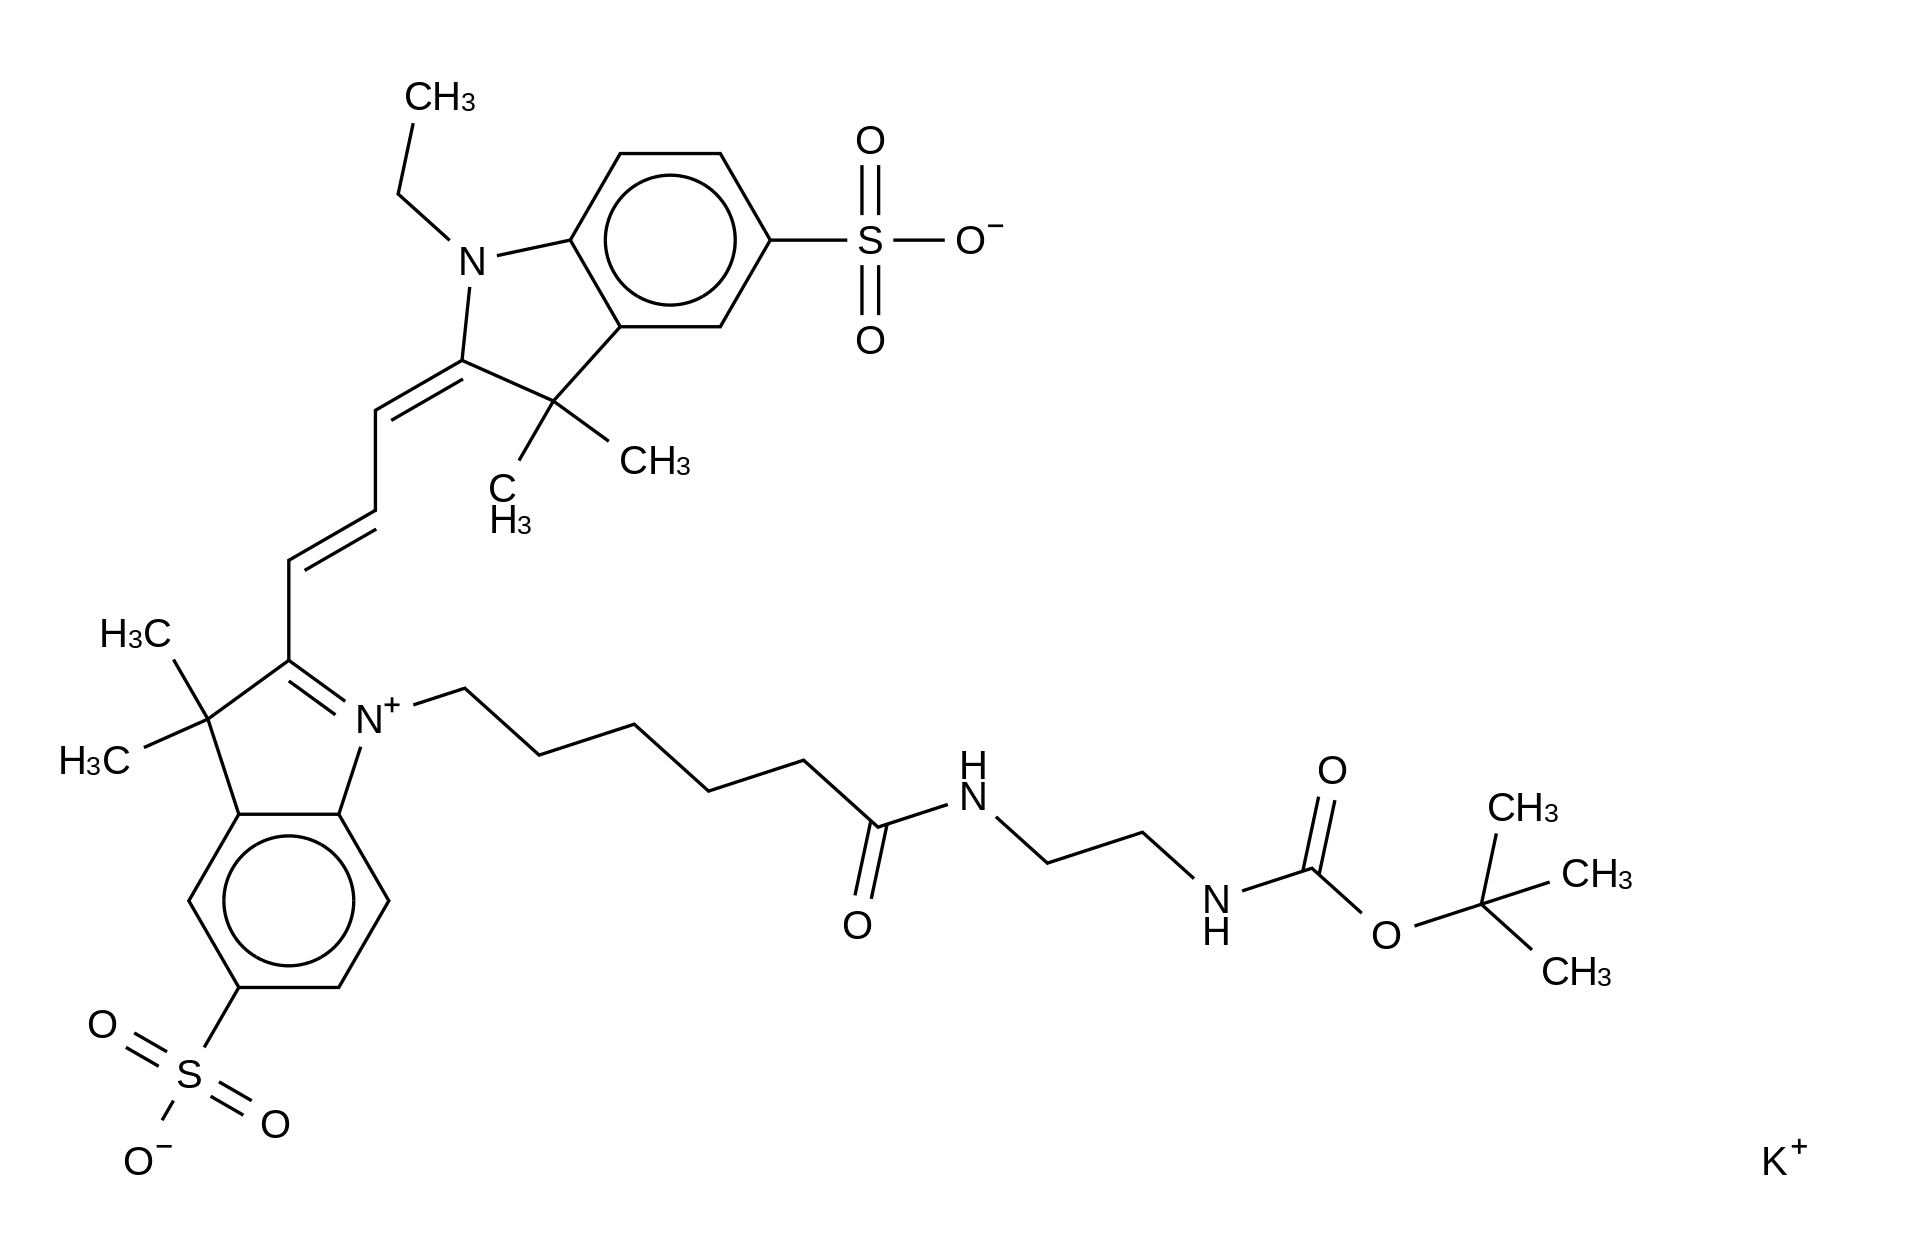 Cyanine 3 Monofunctional Hexanoic Acid Dye n-tert-Butyloxycarbonylethylenediamine Amide Potassium Salt